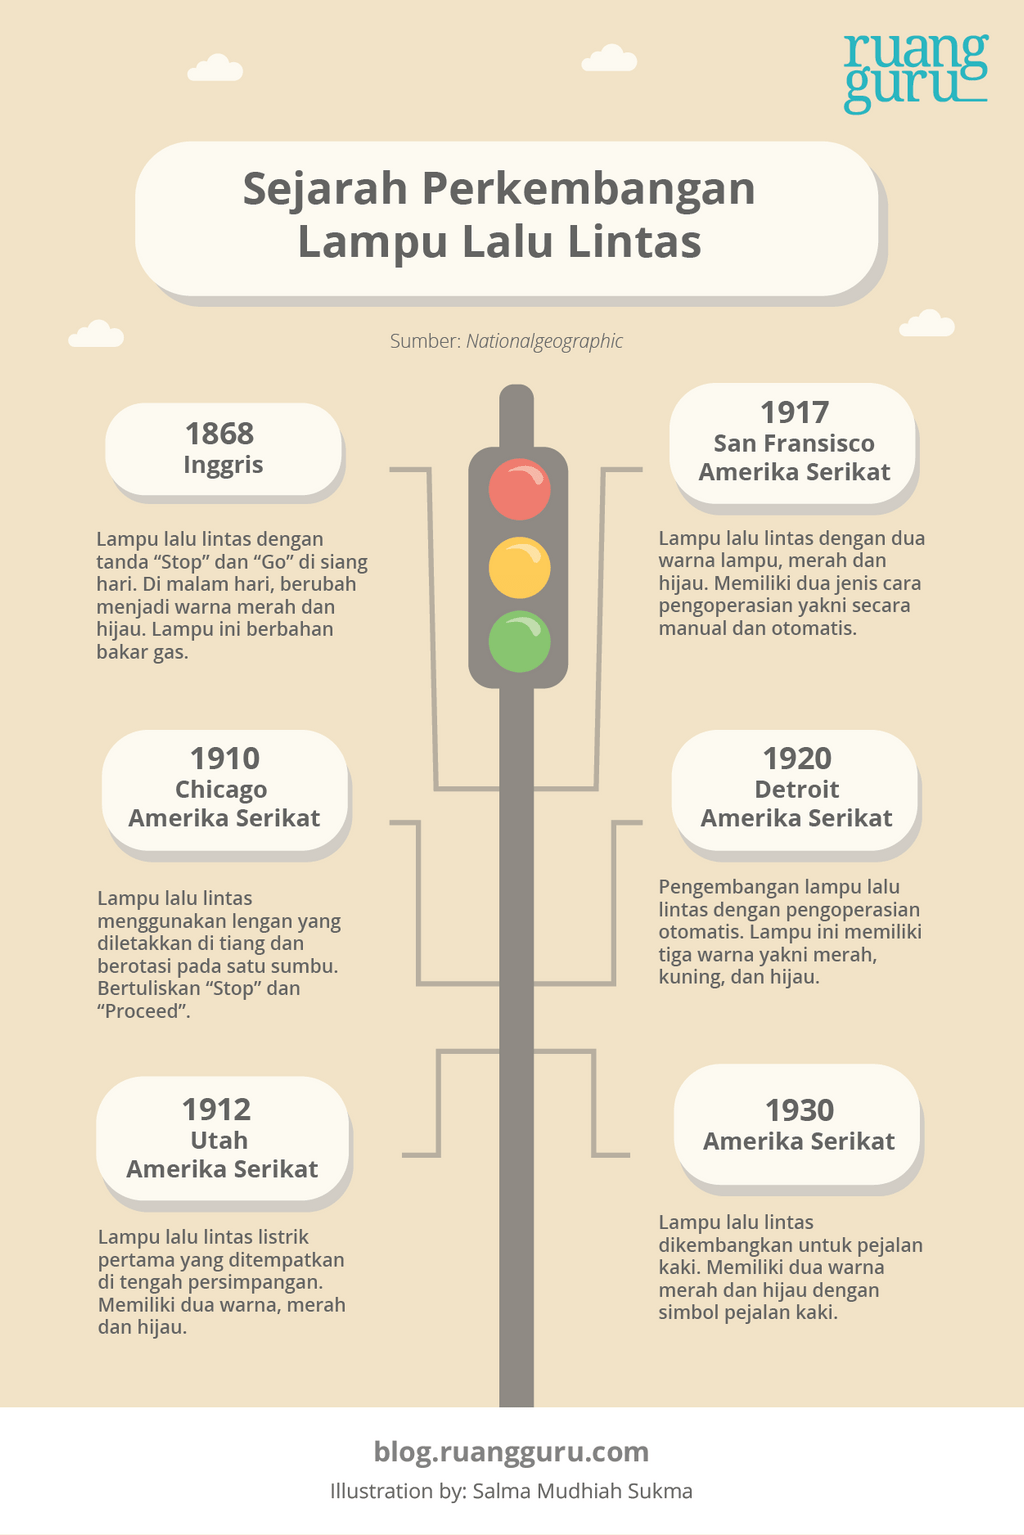 Sejarah lampu lalu lintas